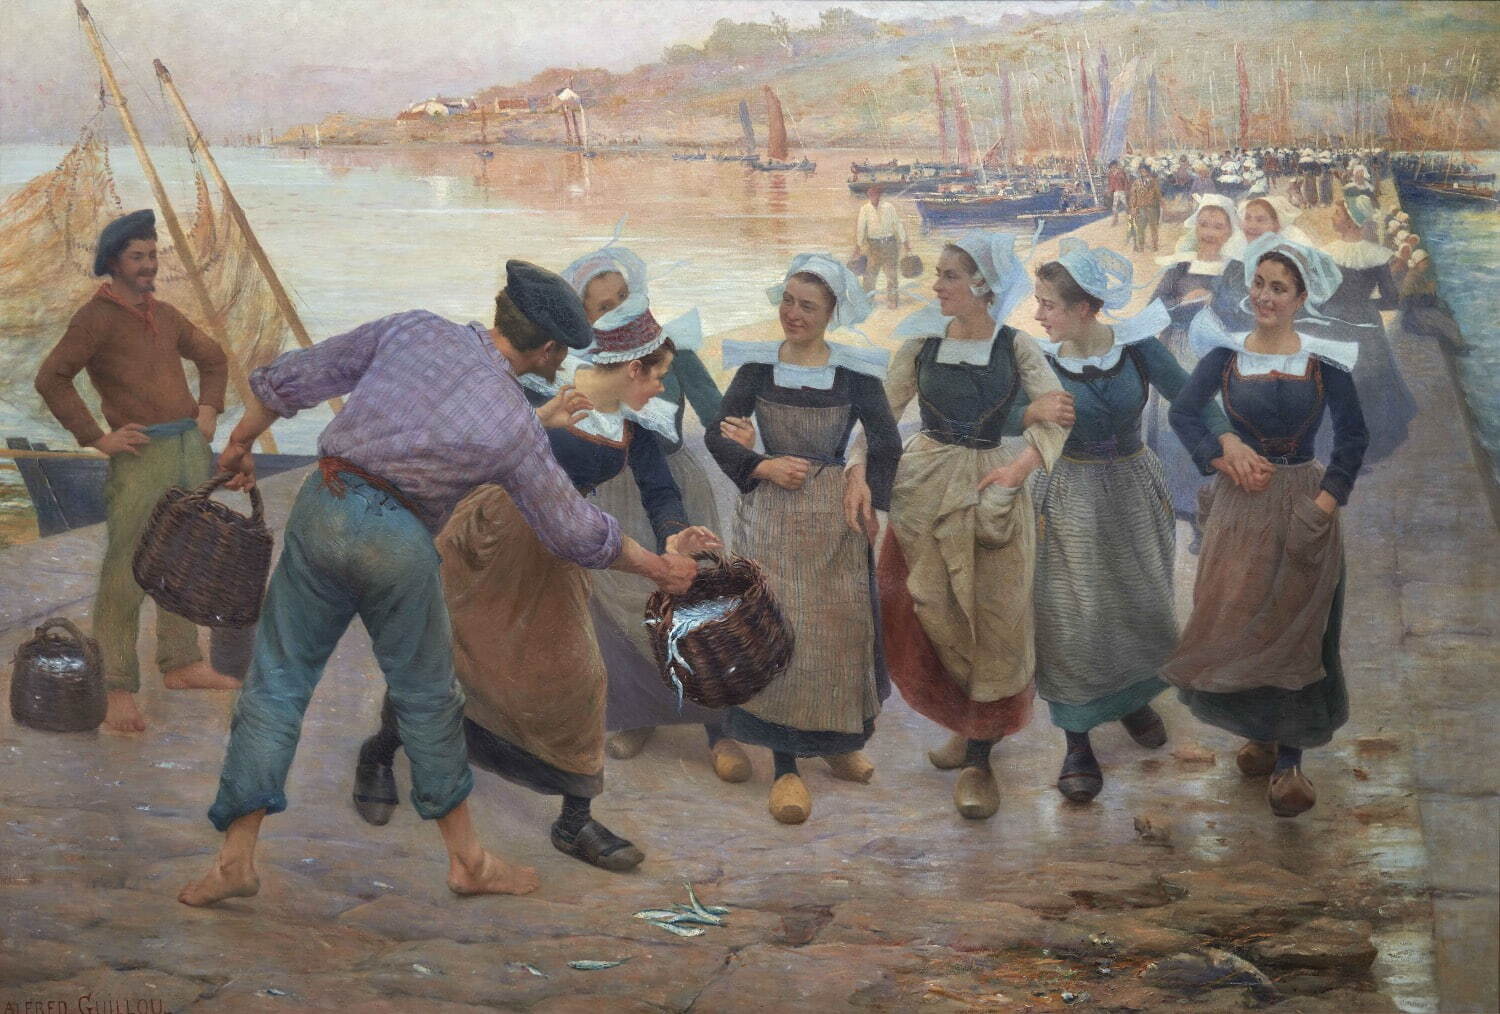 アルフレッド・ギユ 《コンカルノーの鰯加工場で働く娘たち》 1896年頃 カンペール美術館蔵
Collection du musée des beaux-arts de Quimper